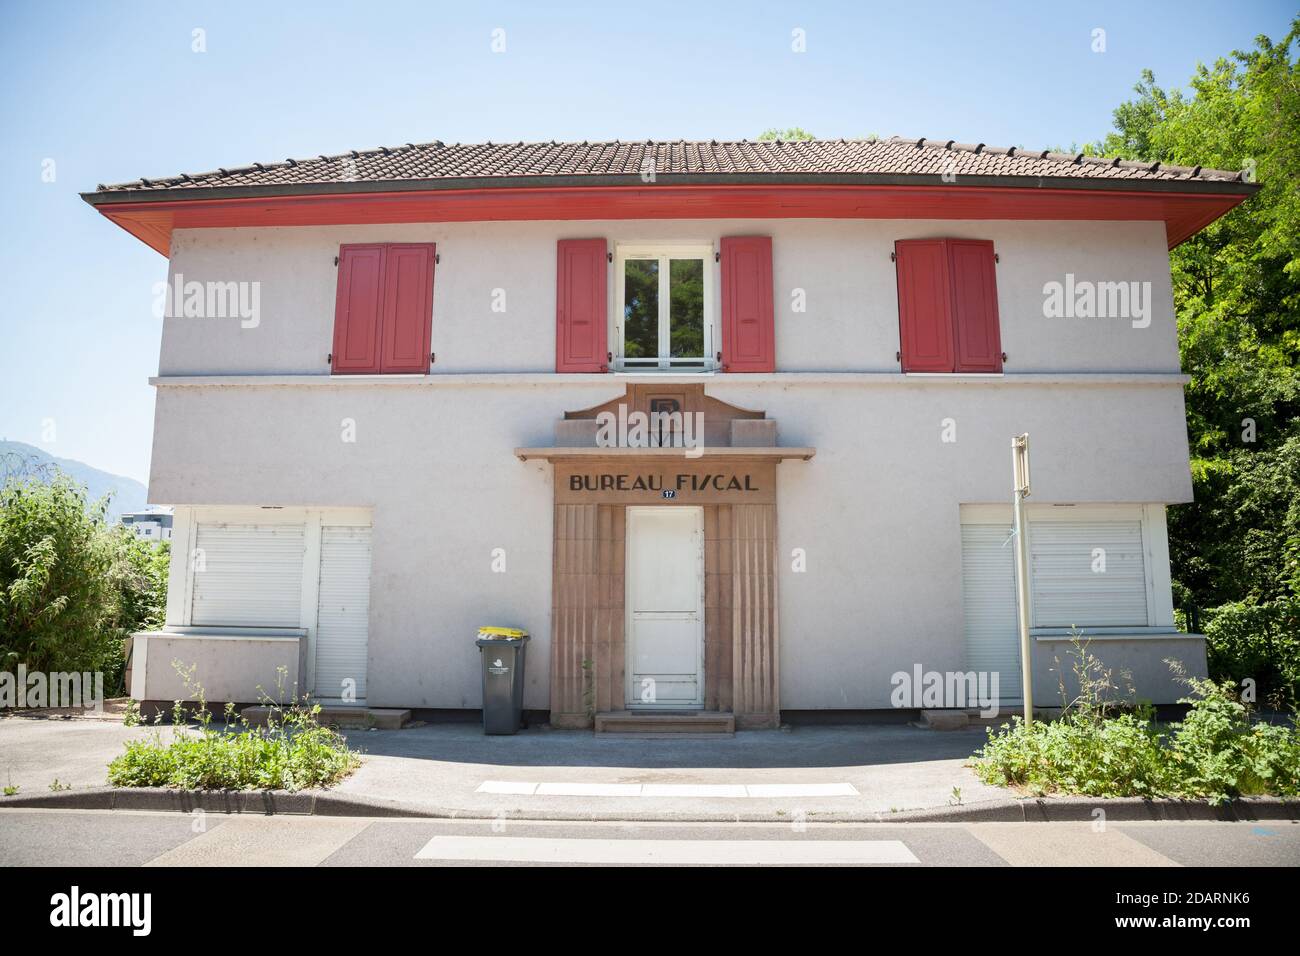 AMBILLY, FRANCE - 18 JUIN 2017 : Douane de mon Idee un immeuble de douane français au poste frontière abandonné entre la France et la Suisse a fermé Banque D'Images